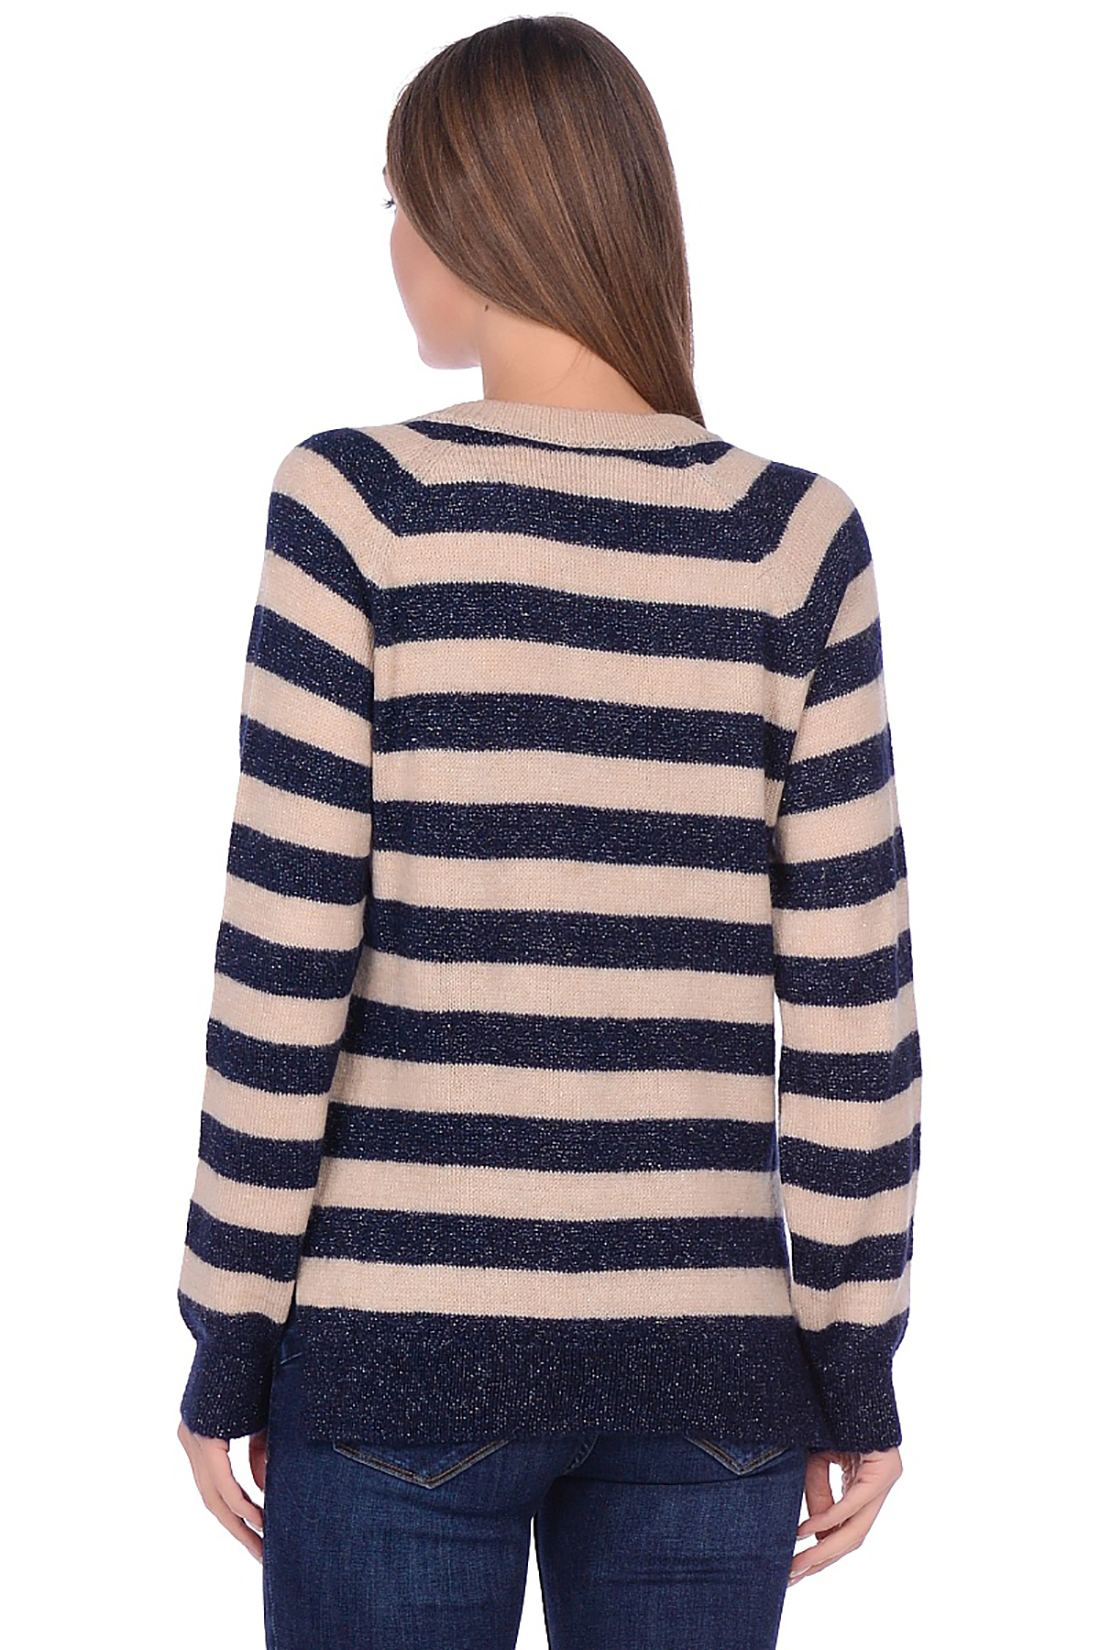 Пуловер с широкими полосами (арт. baon B139516), размер XXL, цвет синий Пуловер с широкими полосами (арт. baon B139516) - фото 2